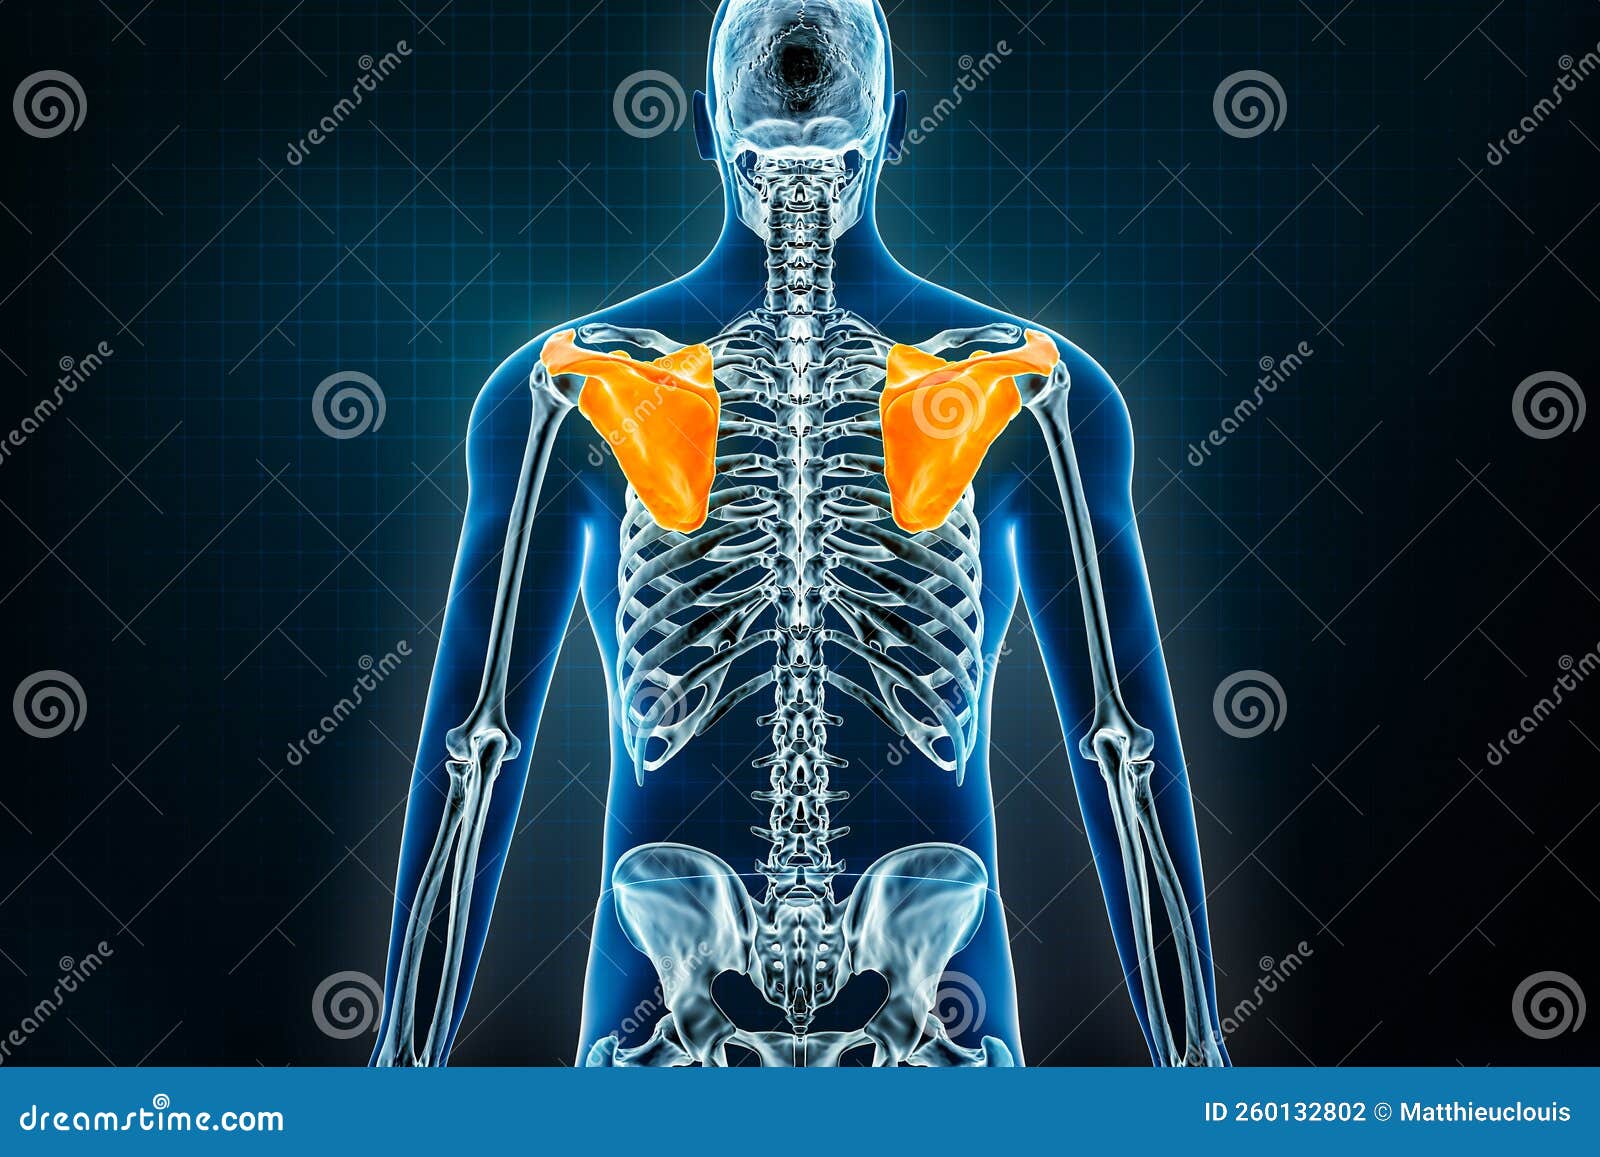 肩胛下角位置图片真人图 - 肩胛下肌位置示意图 - 实验室设备网